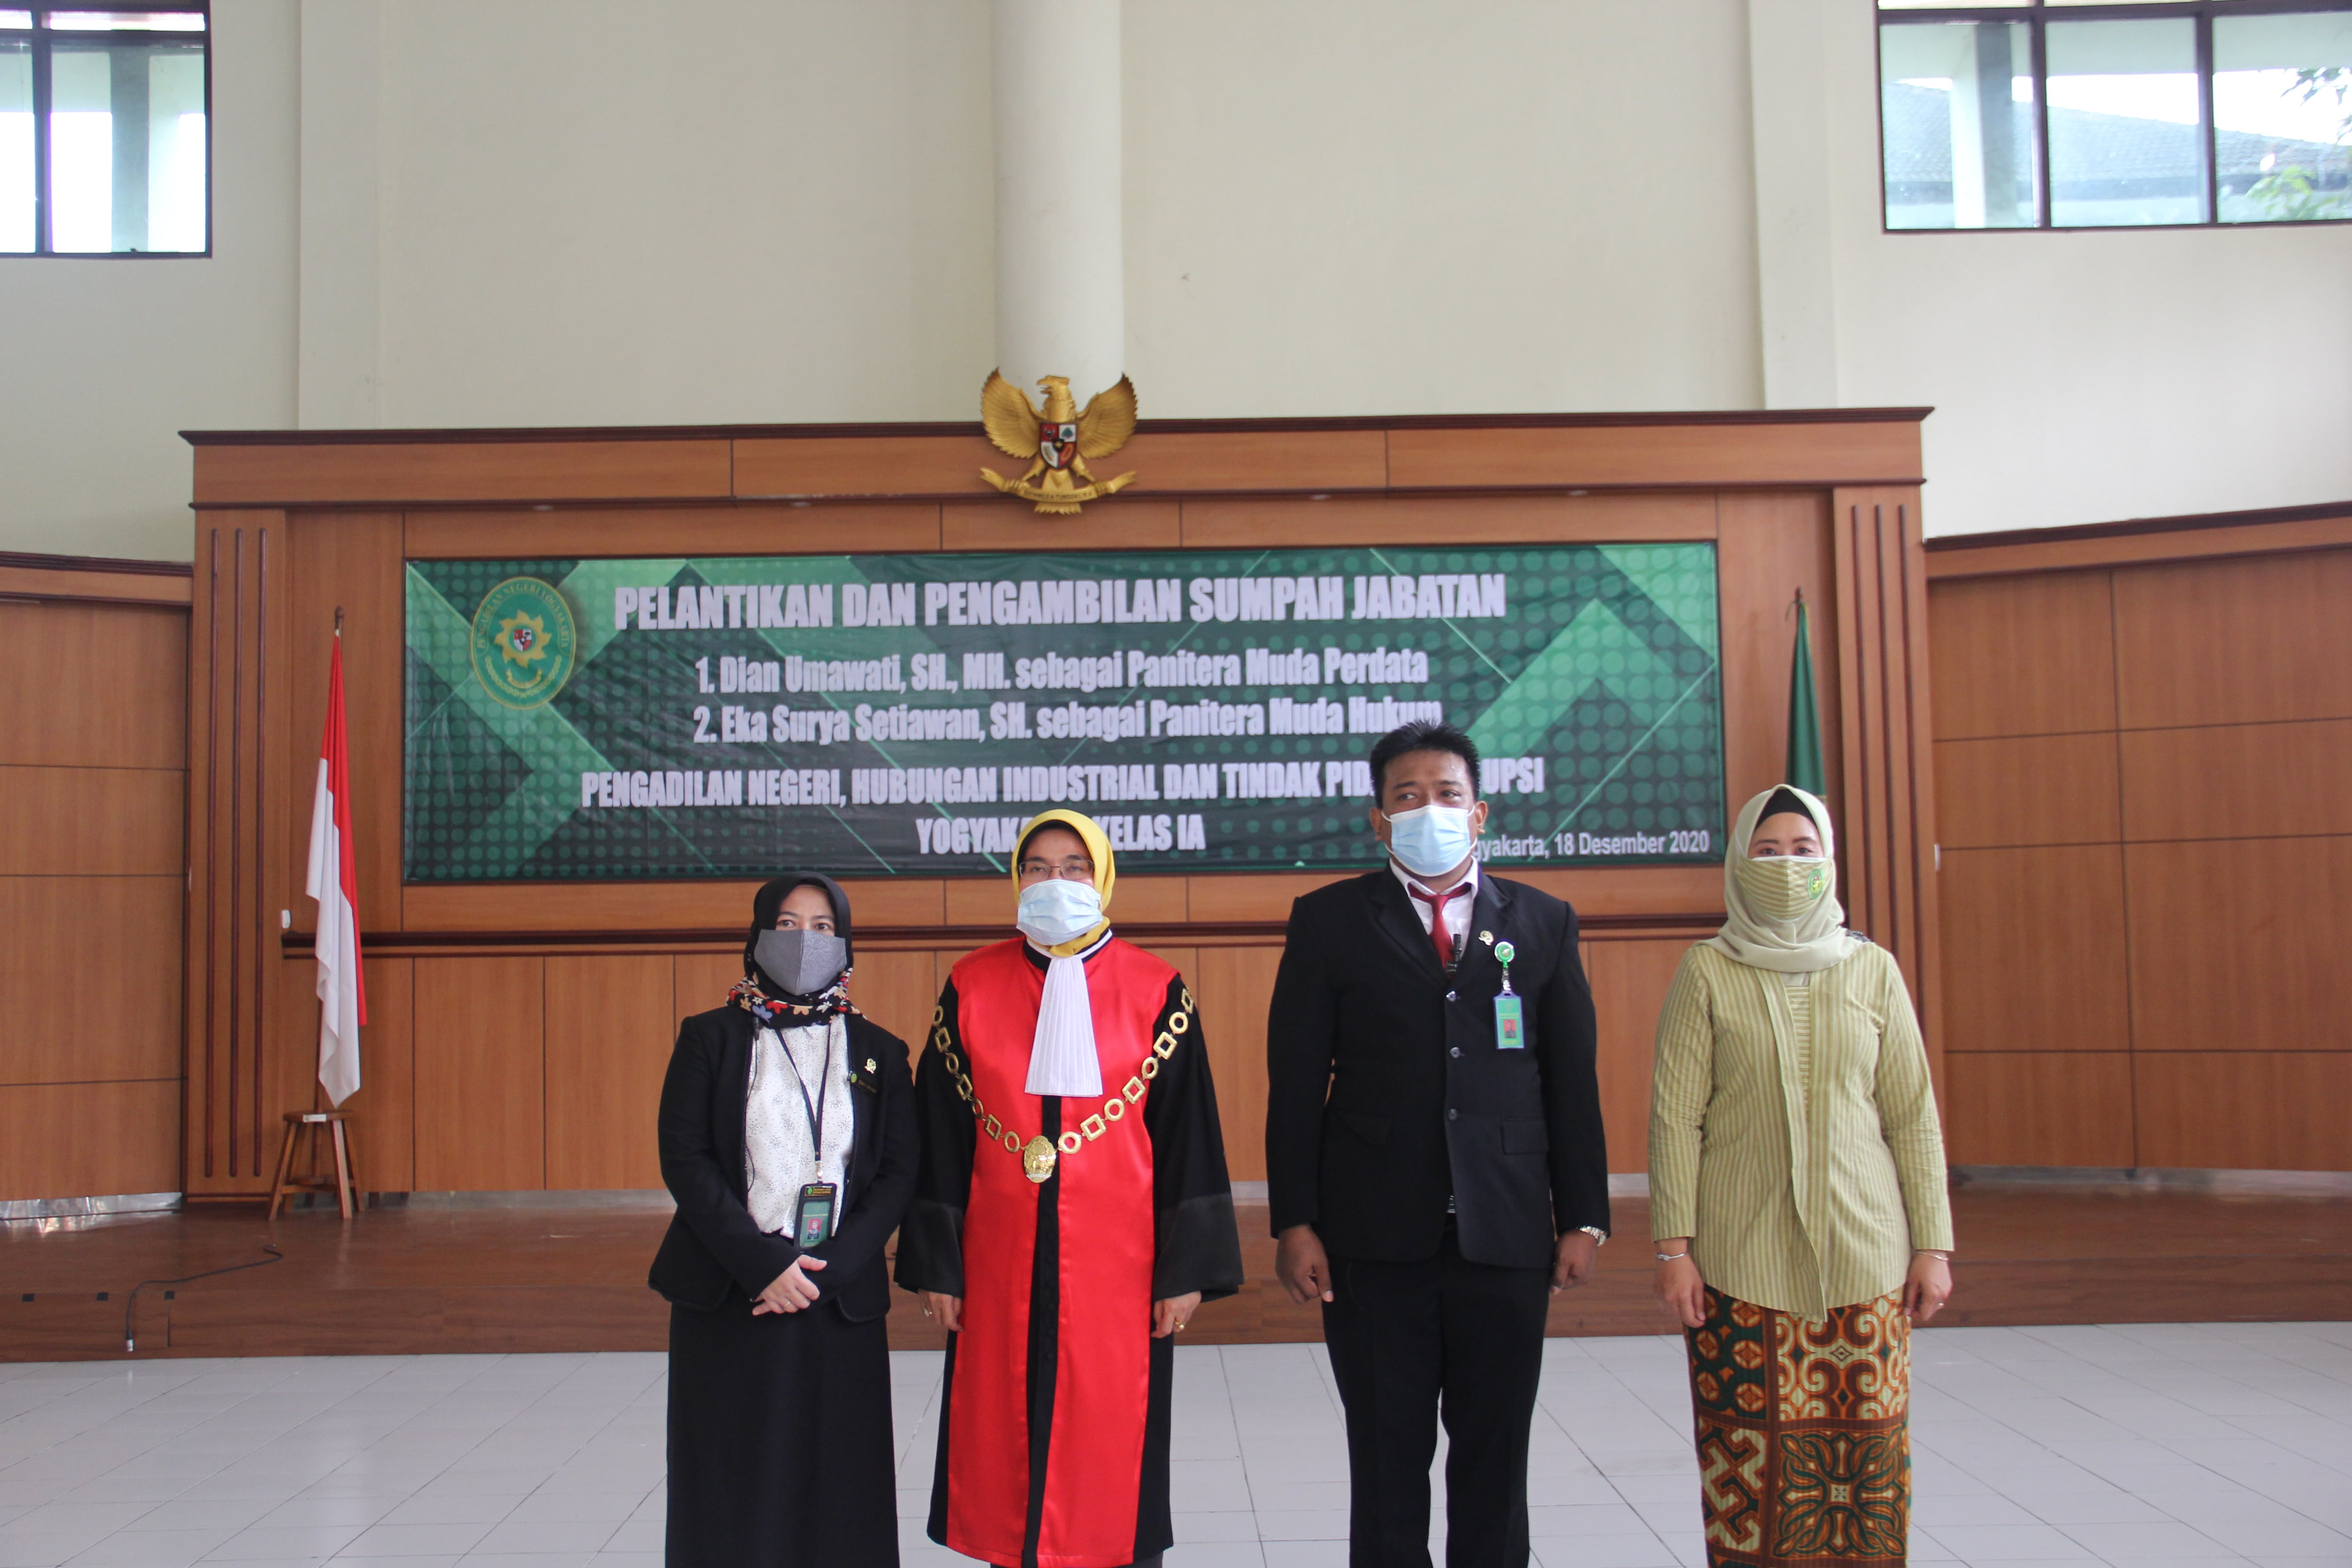 Pengambilan Sumpah Jabatan dan Pelantikan Panitera Muda Perdata dan Panitera Muda Hukum Pengadilan Negeri Yogyakarta Kelas IA